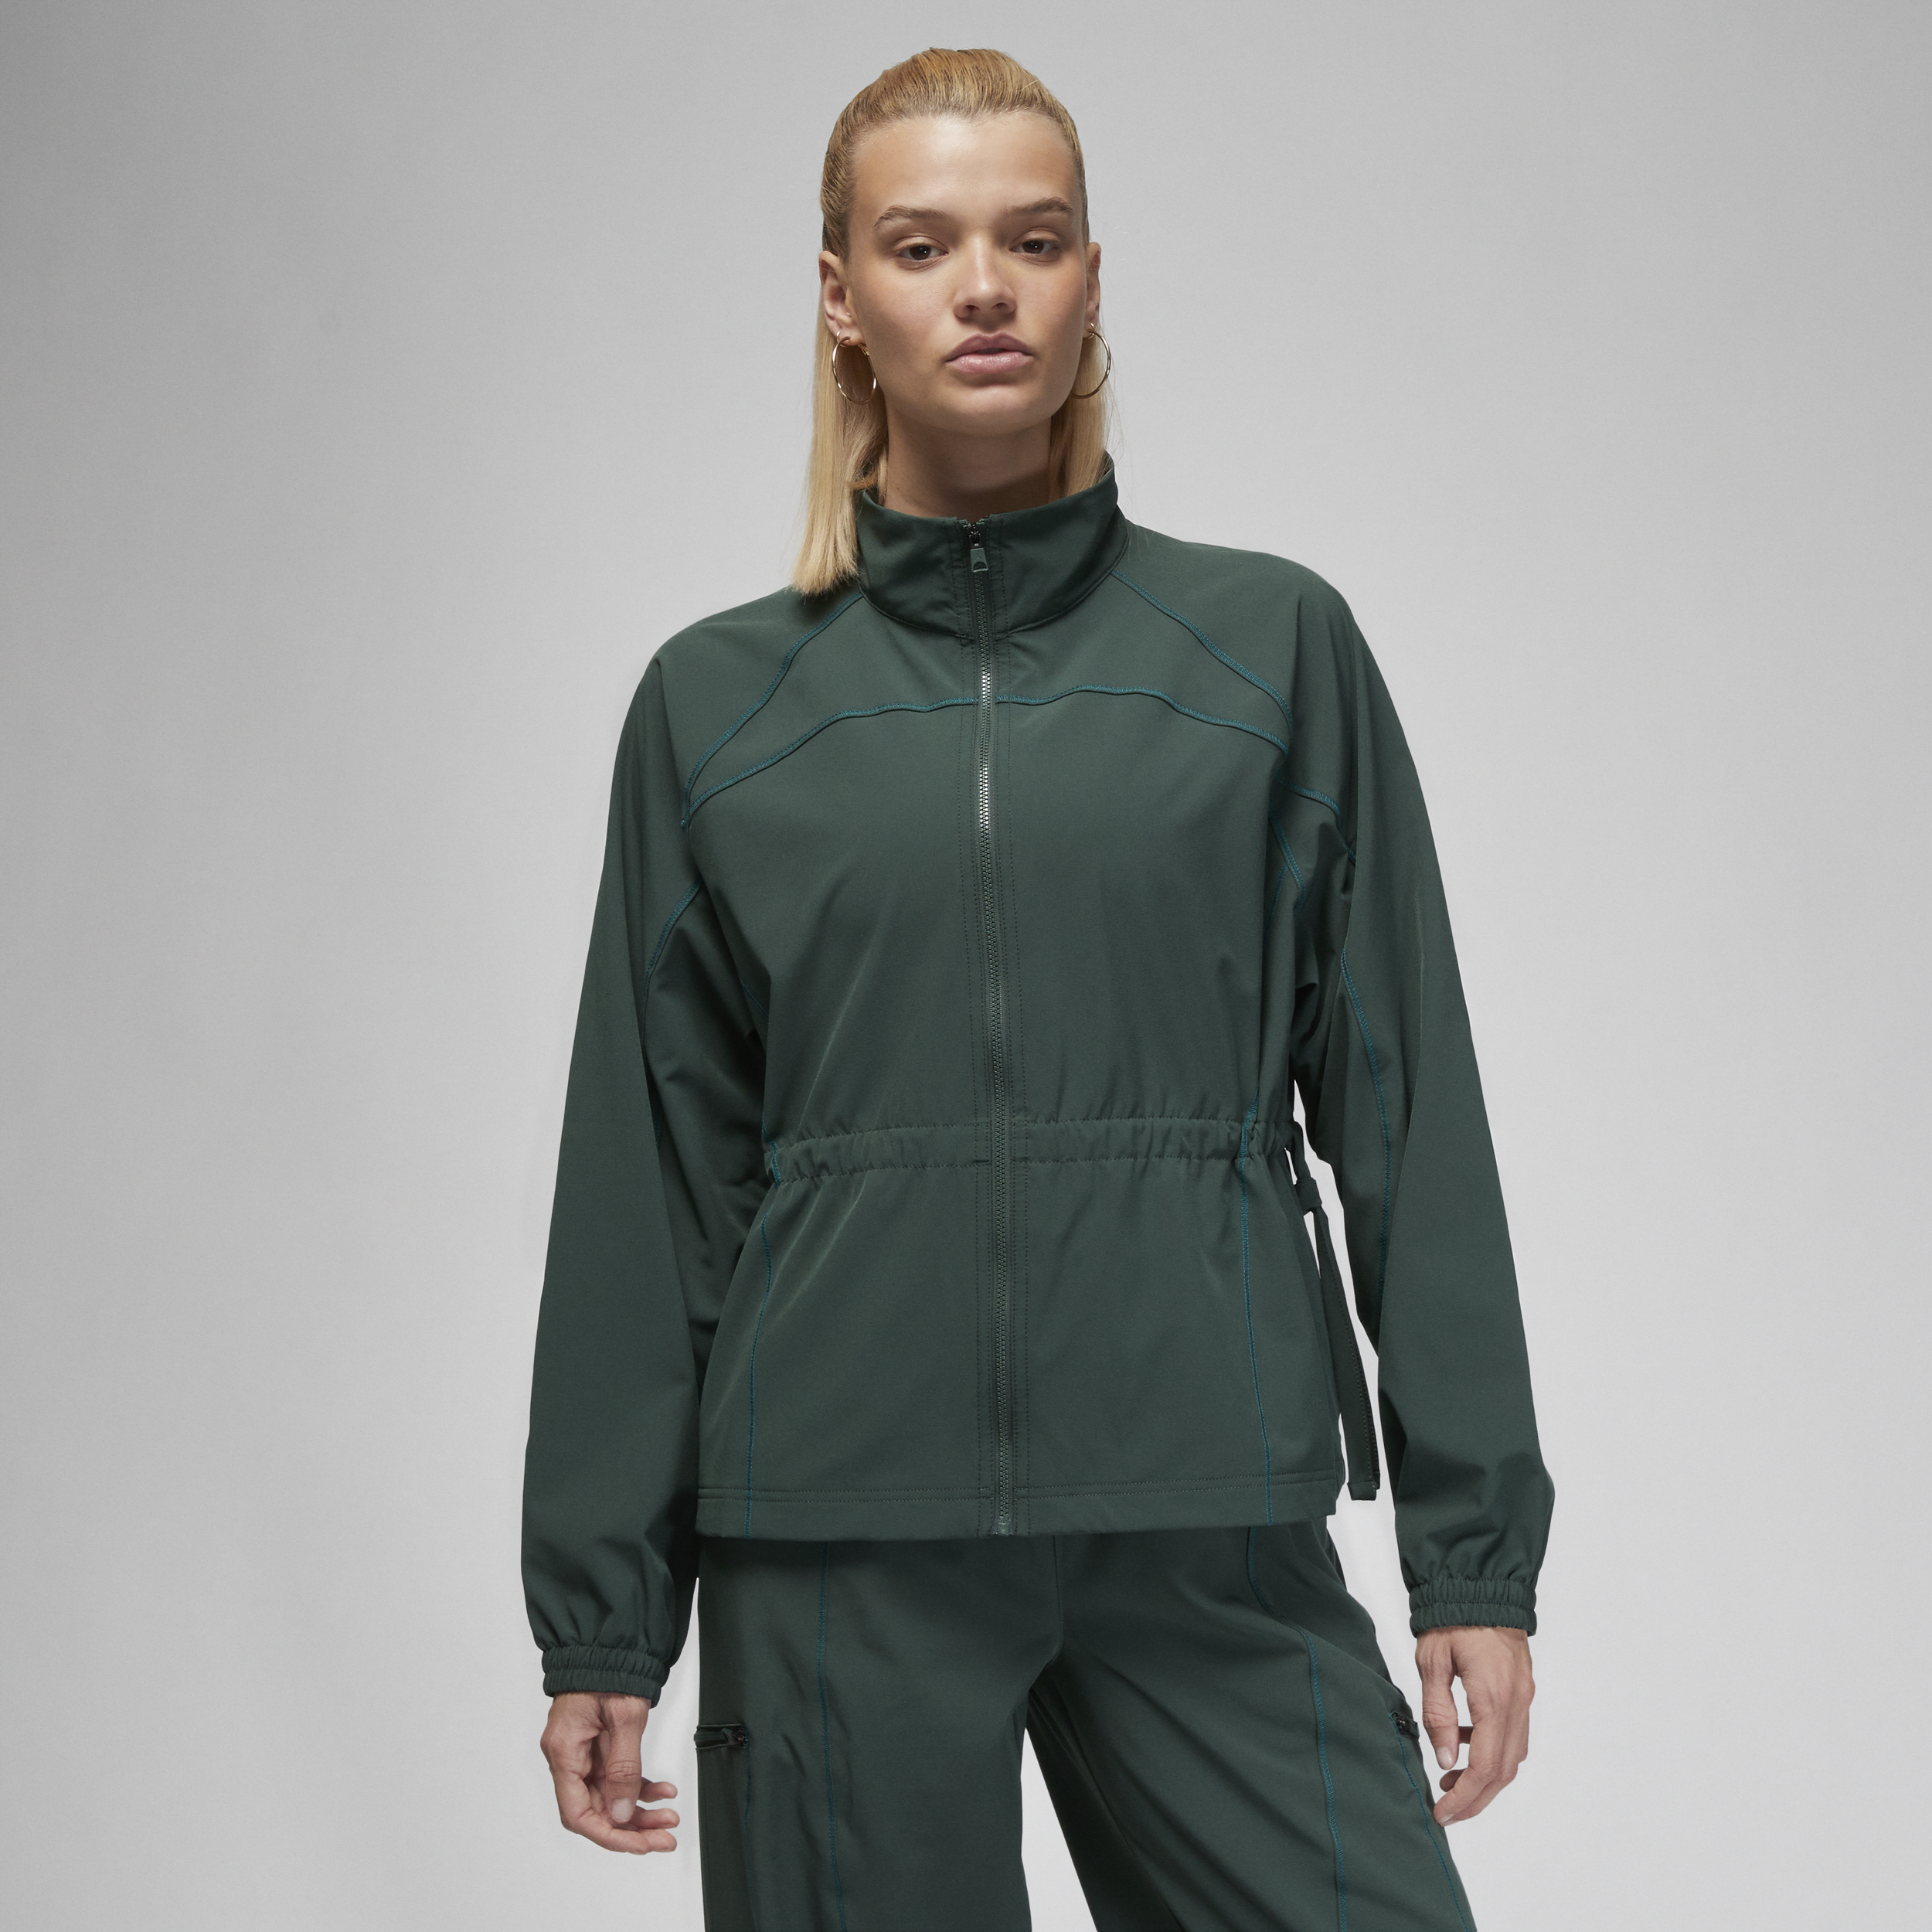 Jordan Sport-jakke til kvinder - grøn